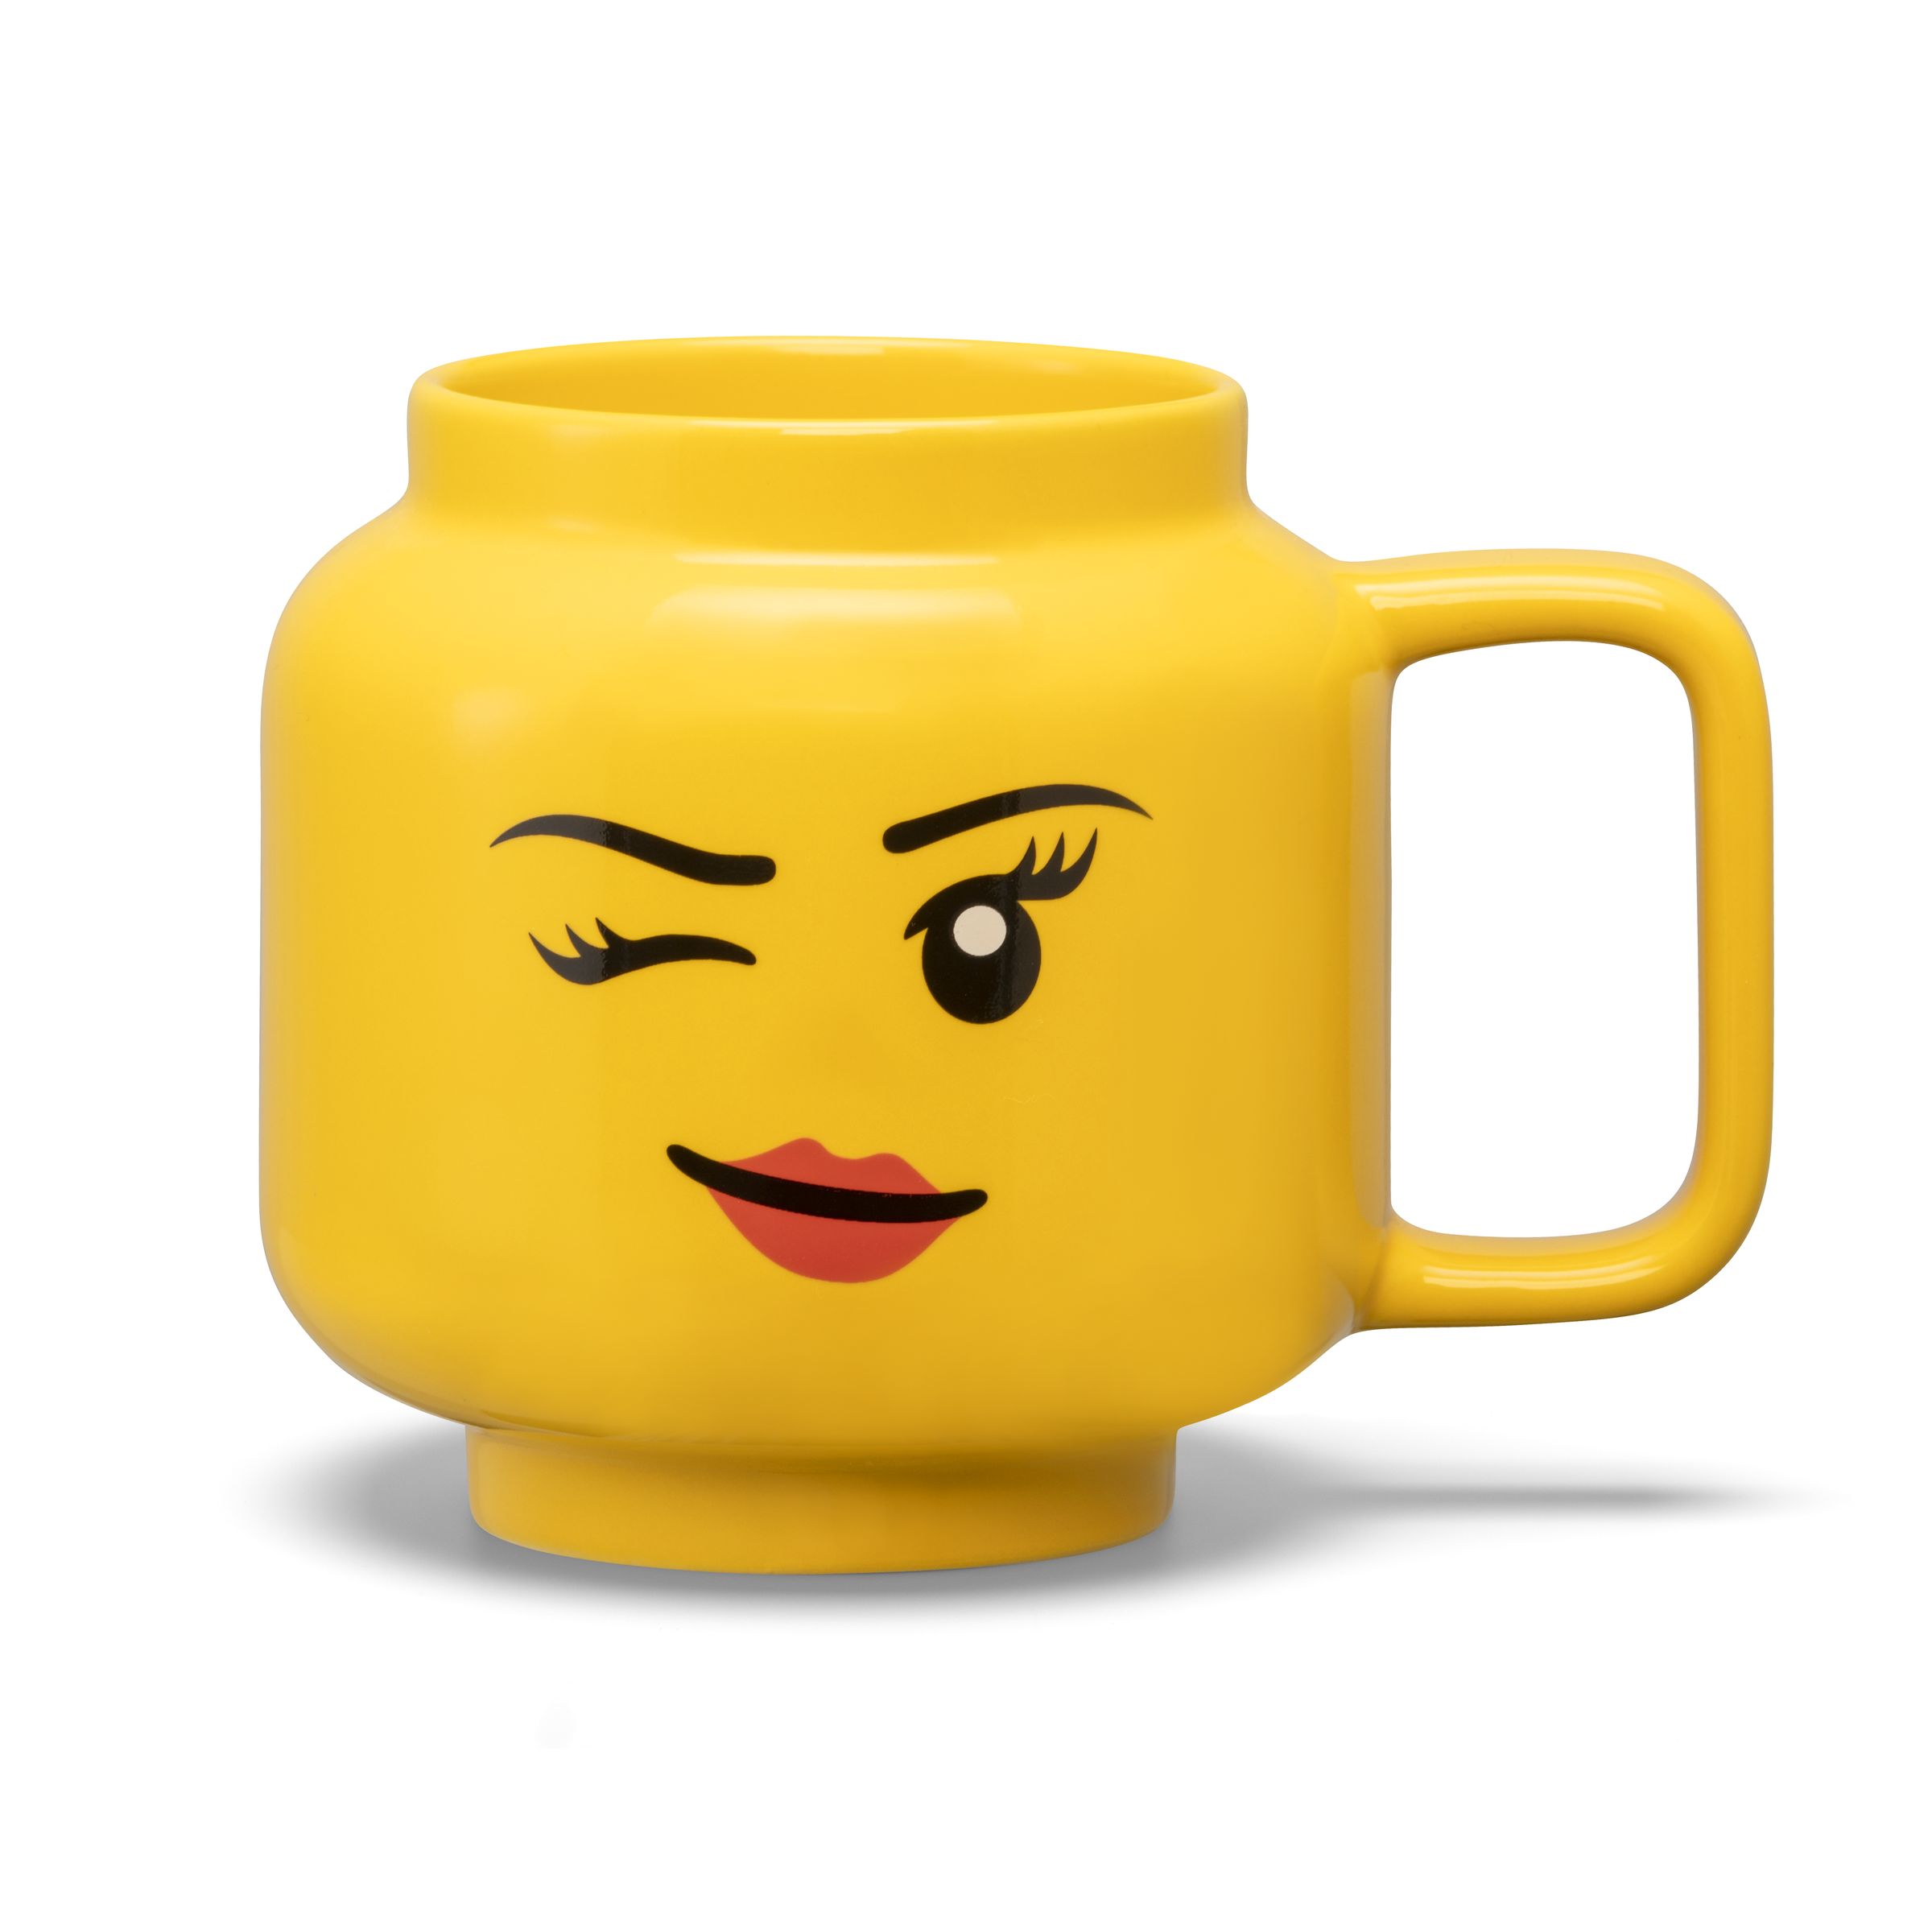 LEGO Gear 5007876 Keramikbecher mit zwinkerndem Mädchengesicht